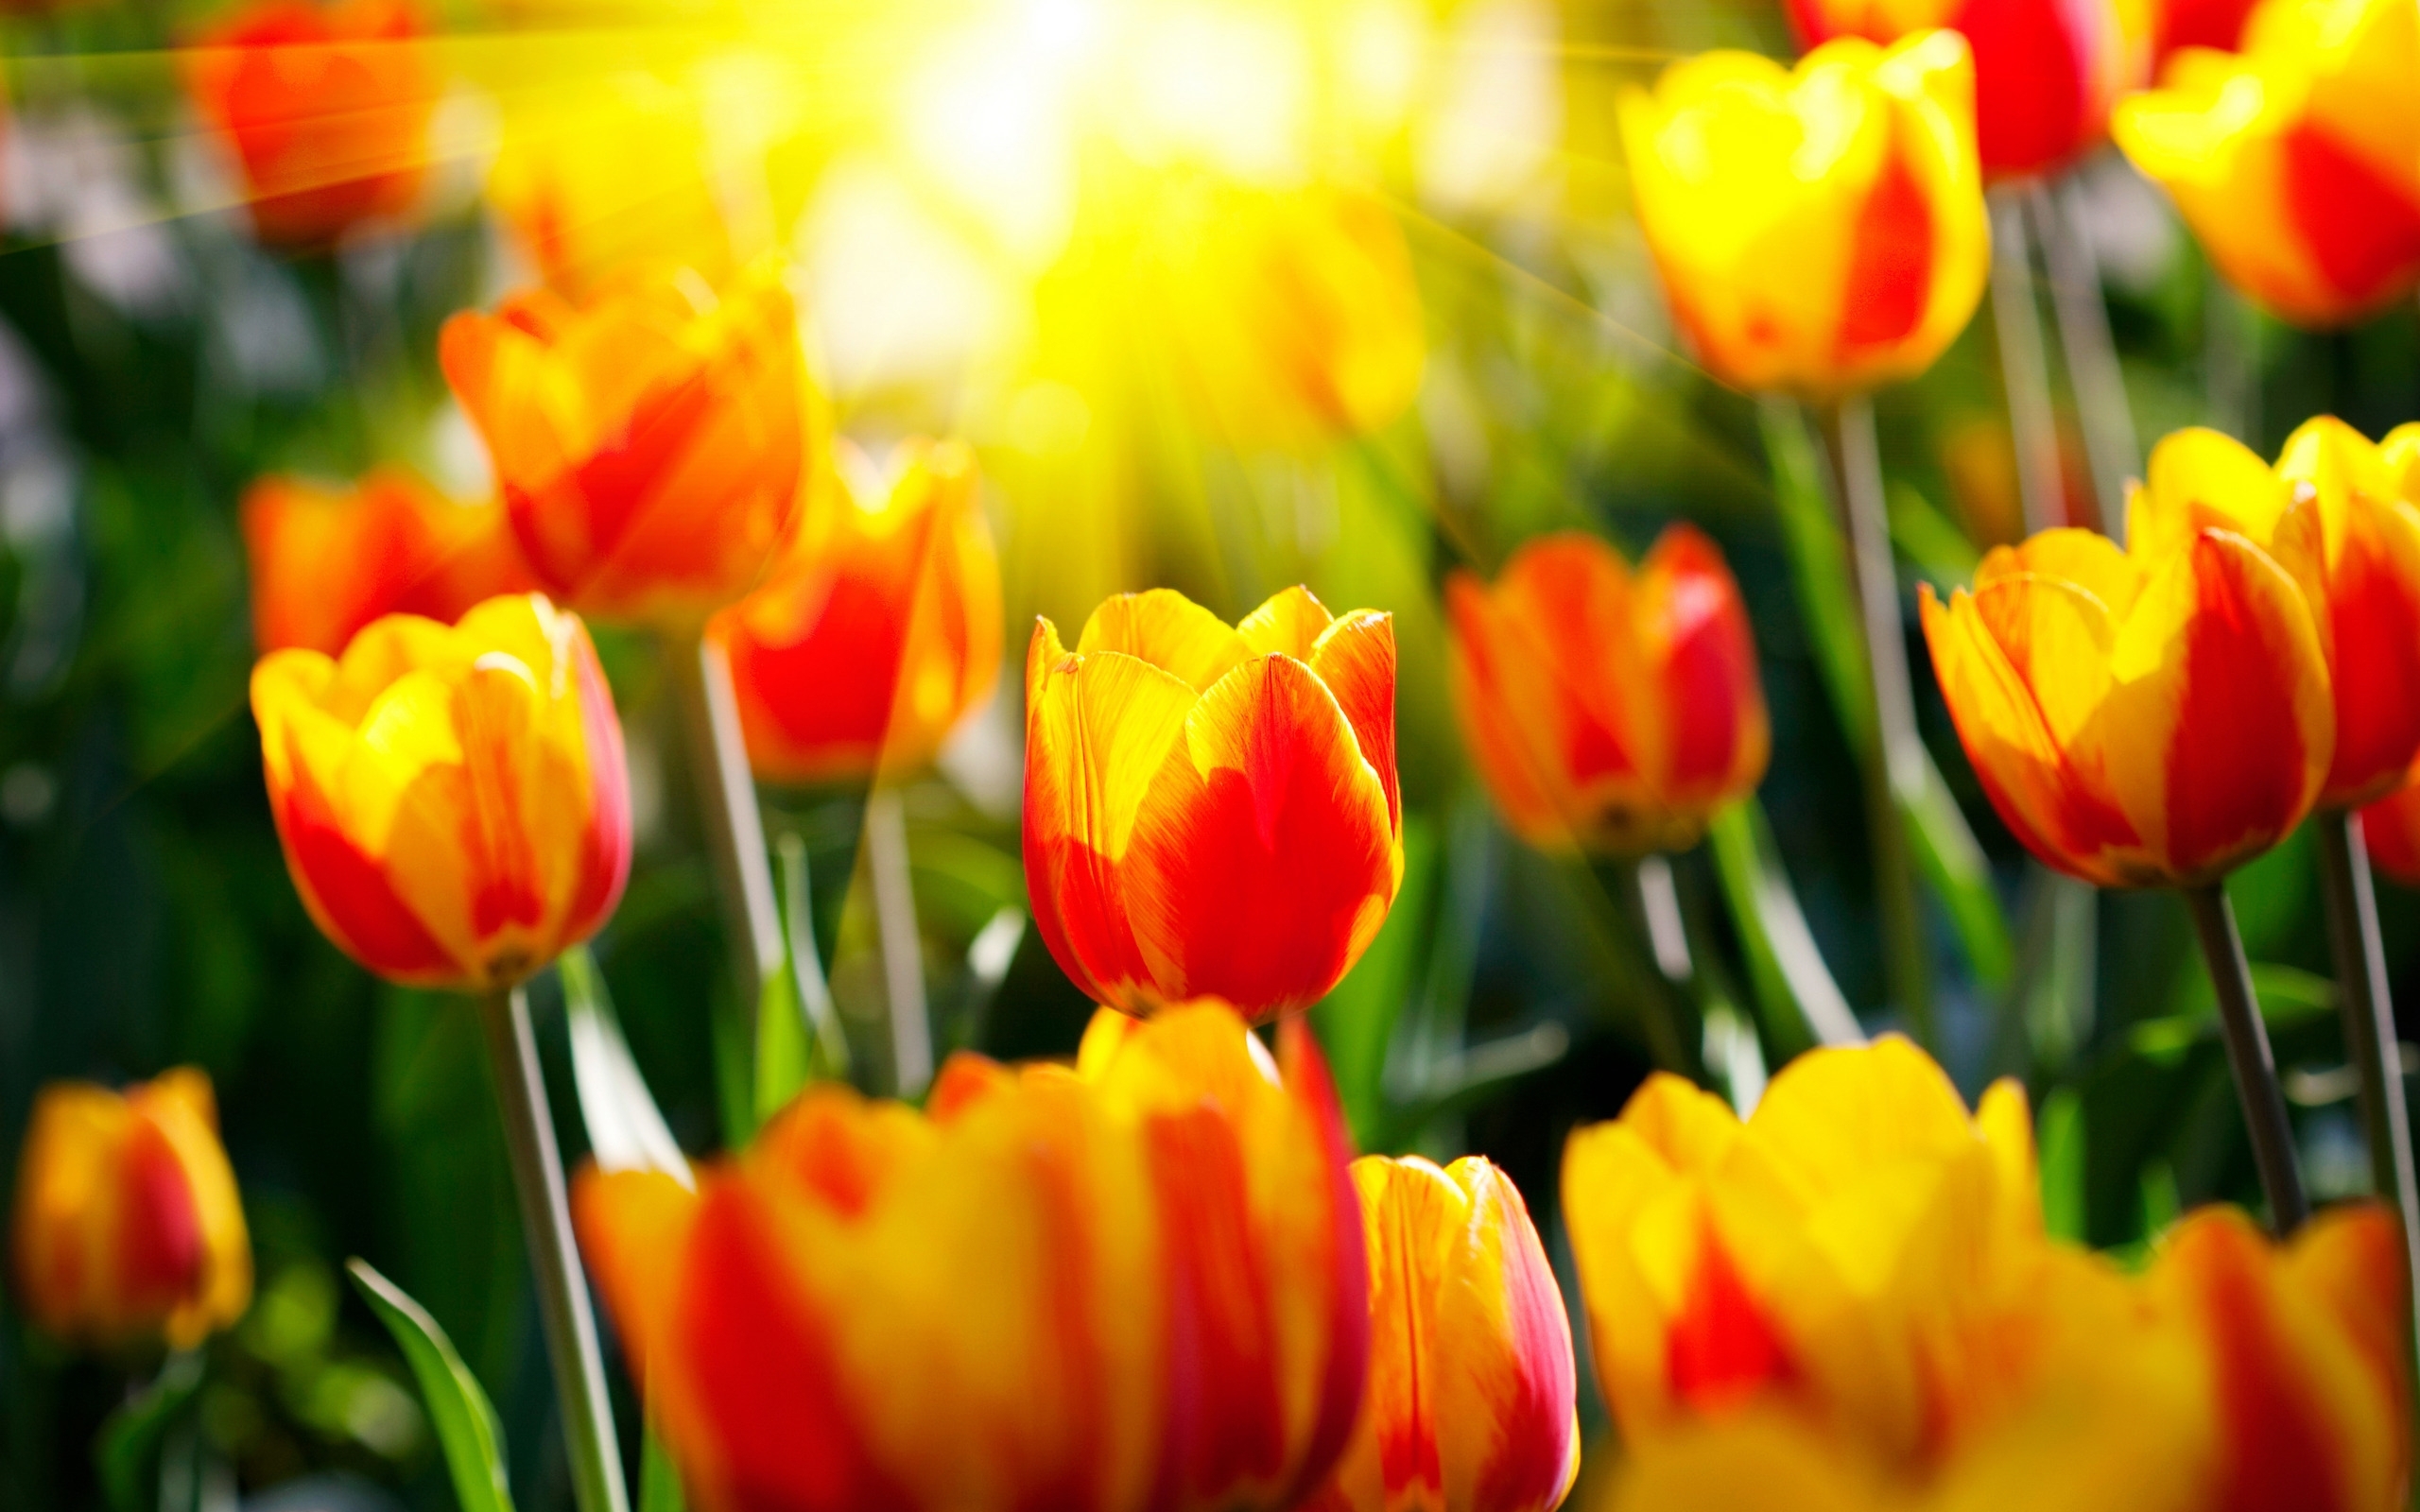 Скачать обои бесплатно Тюльпаны, Цветы, Растения картинка на рабочий стол ПК